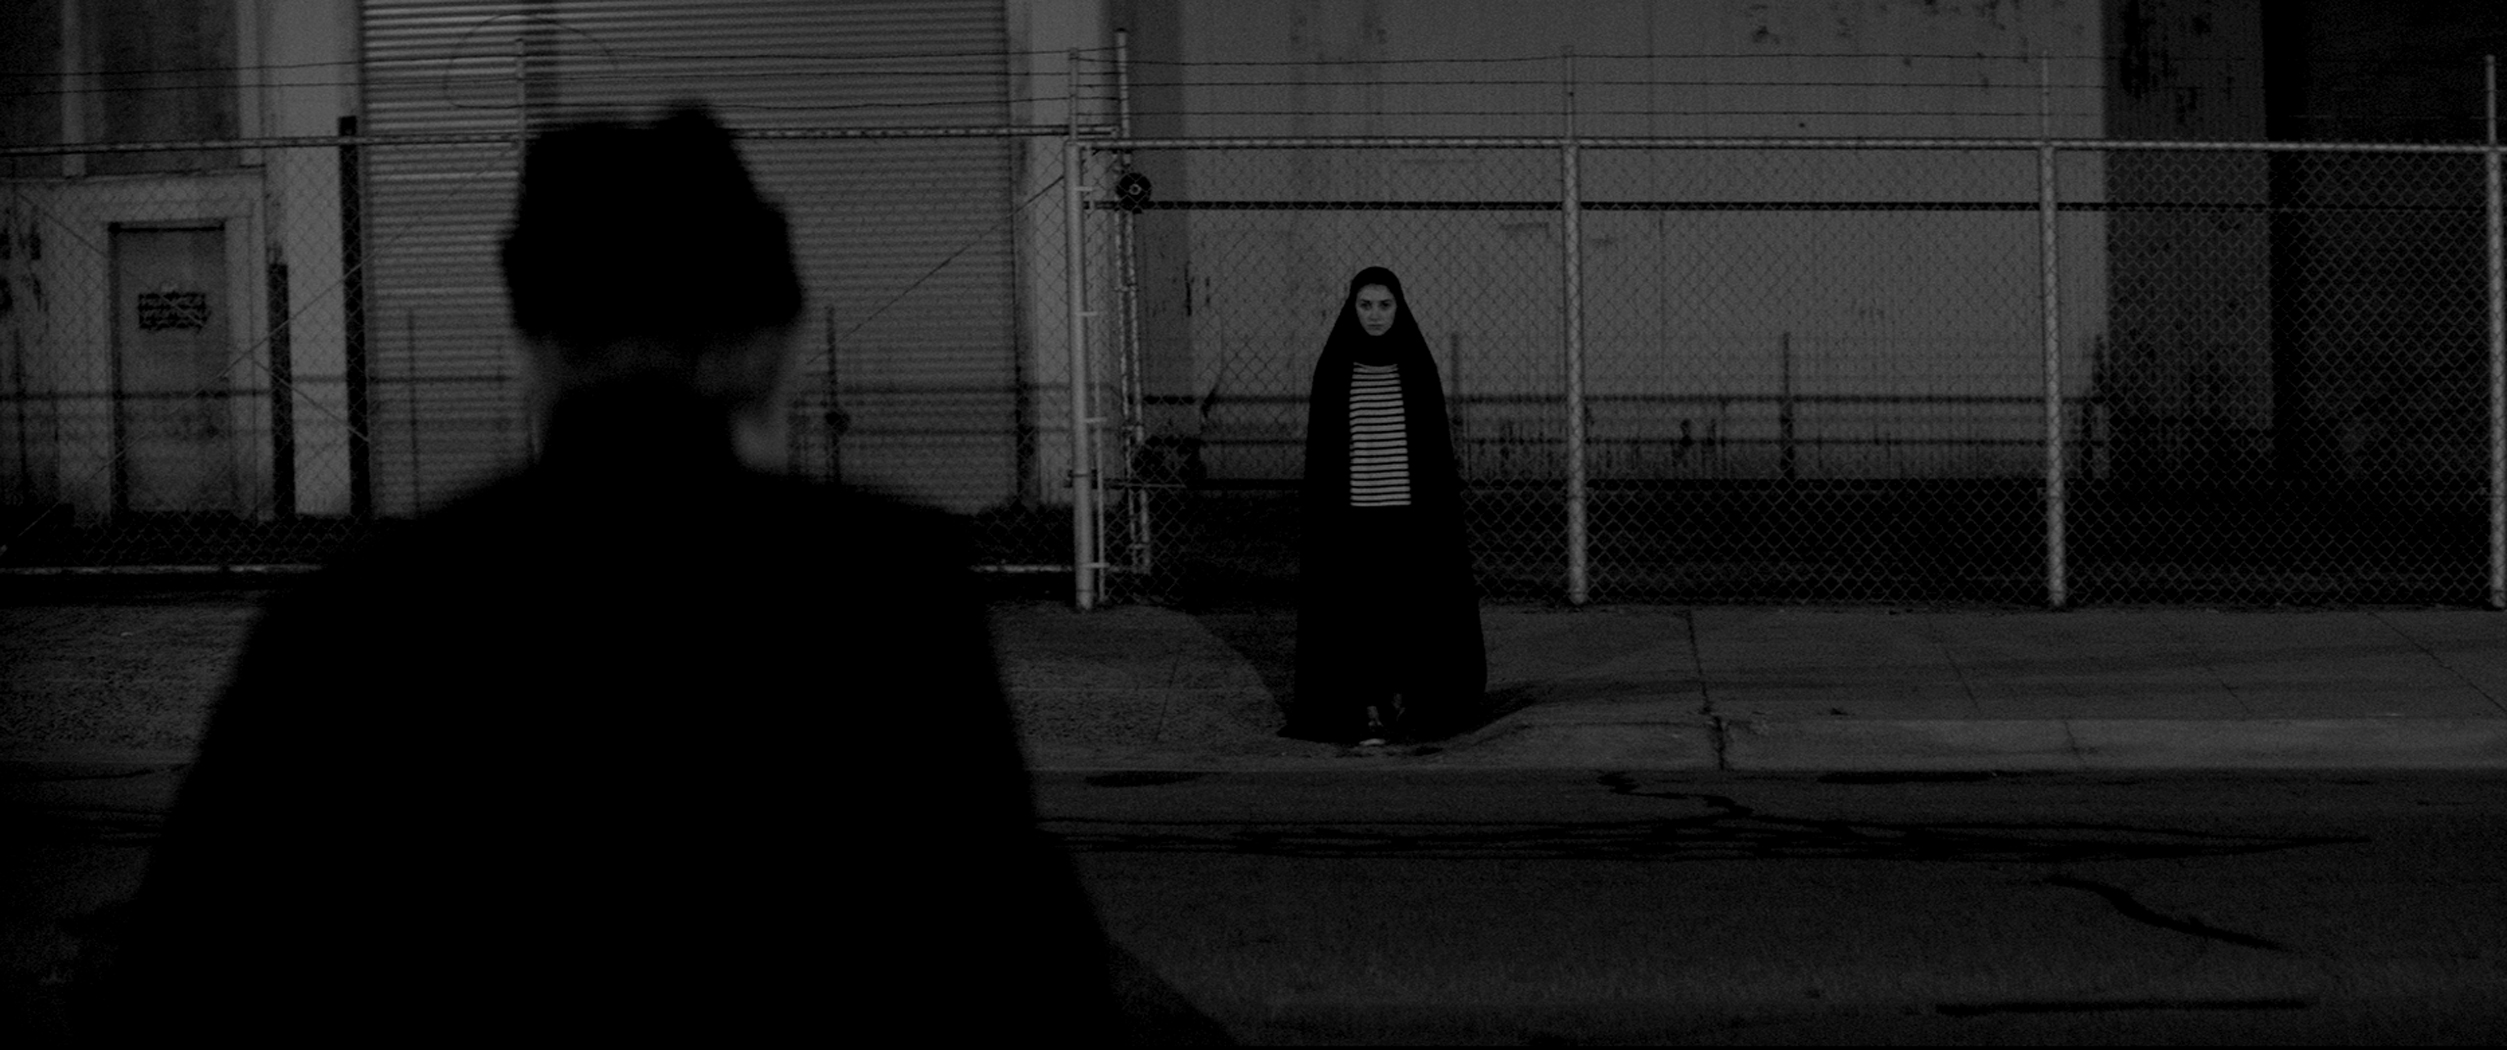 zdjęcie przedstawiające kadr z filmu O dziewczynie, która wraca nocą sama do domu